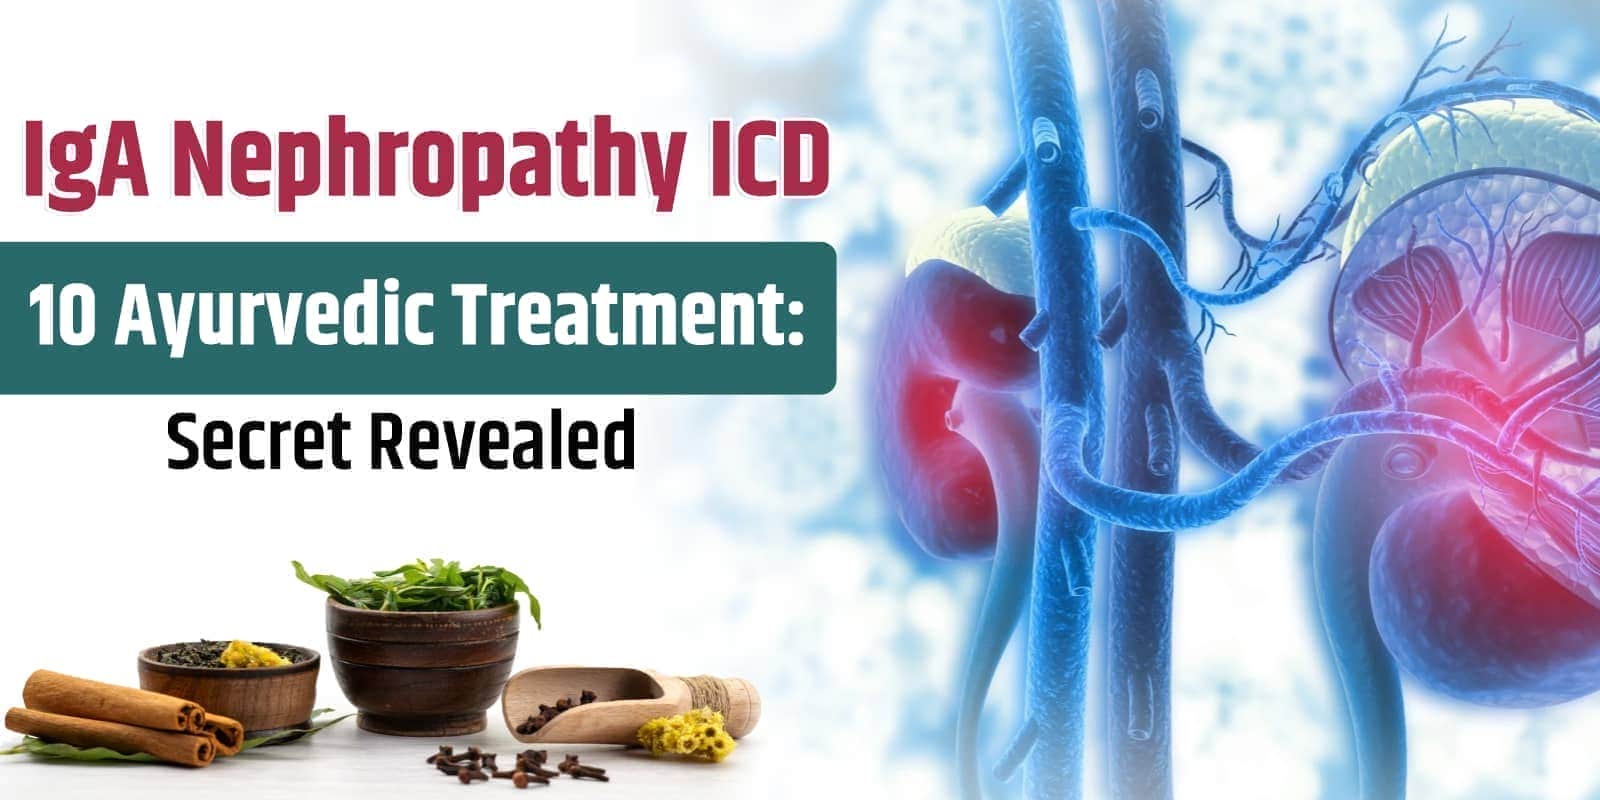 IgA Nephropathy ICD 10 Ayurvedic Treatment: Secret Revealed